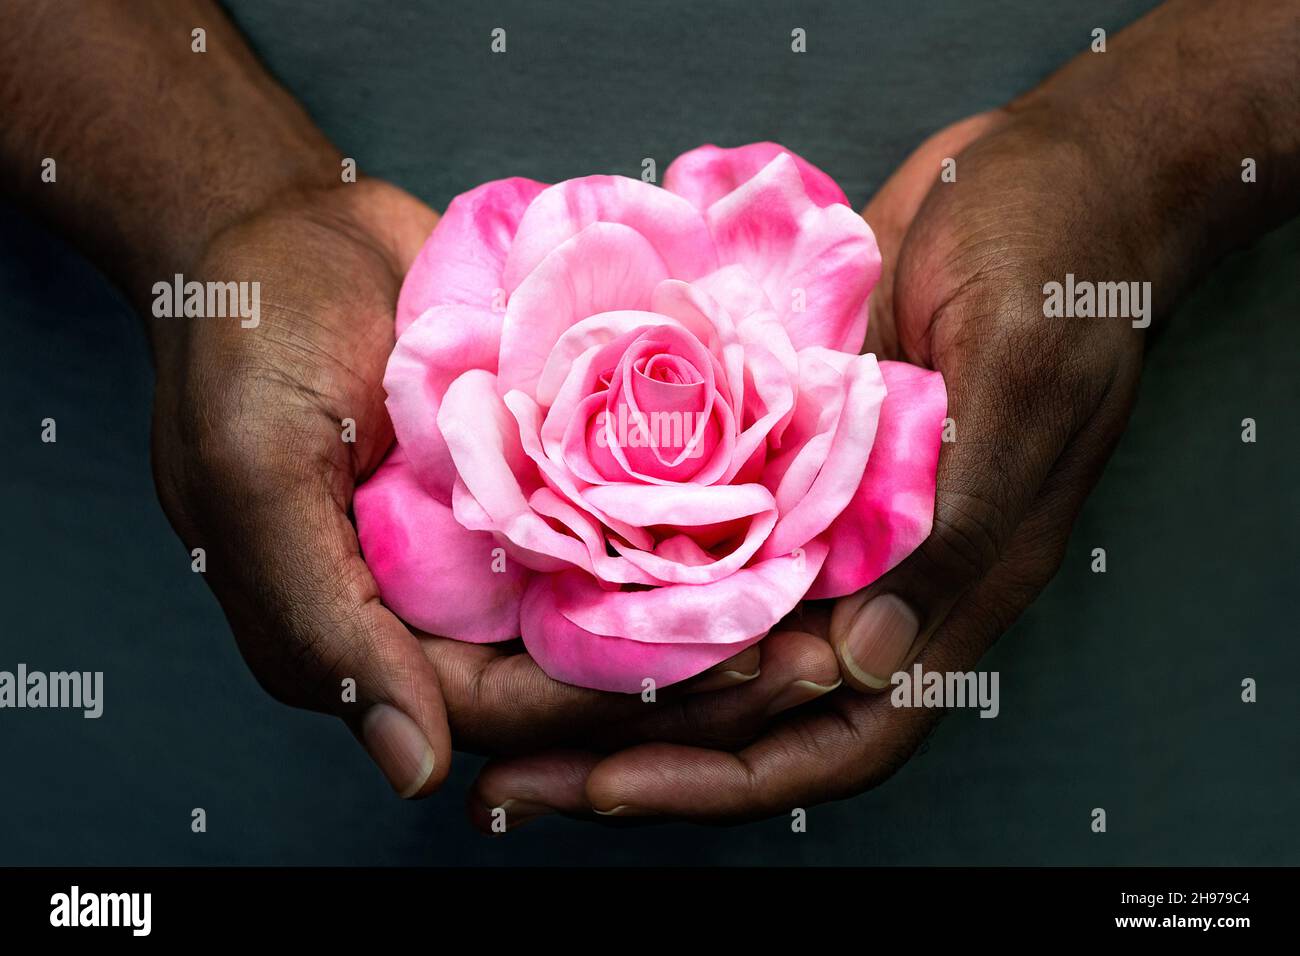 African American Male Hands Holding Rose Grey Hintergrund. Nahaufnahme der Hände eines schwarzen Mannes mit einer einzelnen rosa Rose. Liebe, Geschenk, geben, valentine Konzept. Stockfoto